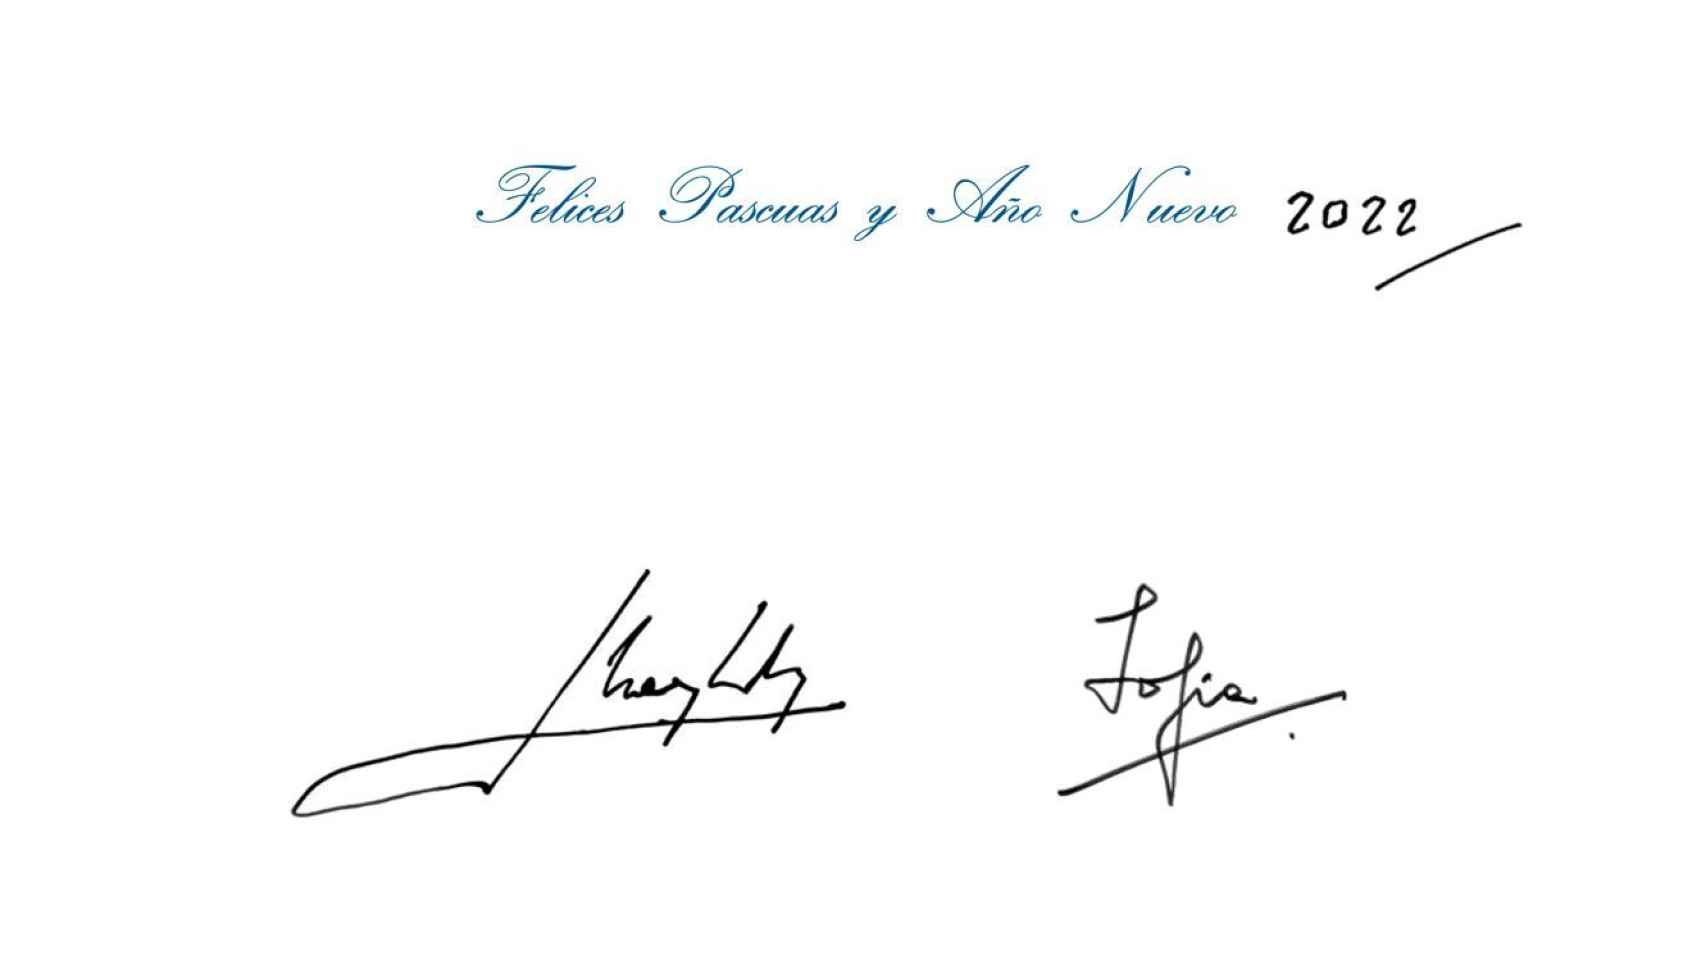 El mensaje y las firmas de los reyes eméritos, Juan Carlos y Sofía.